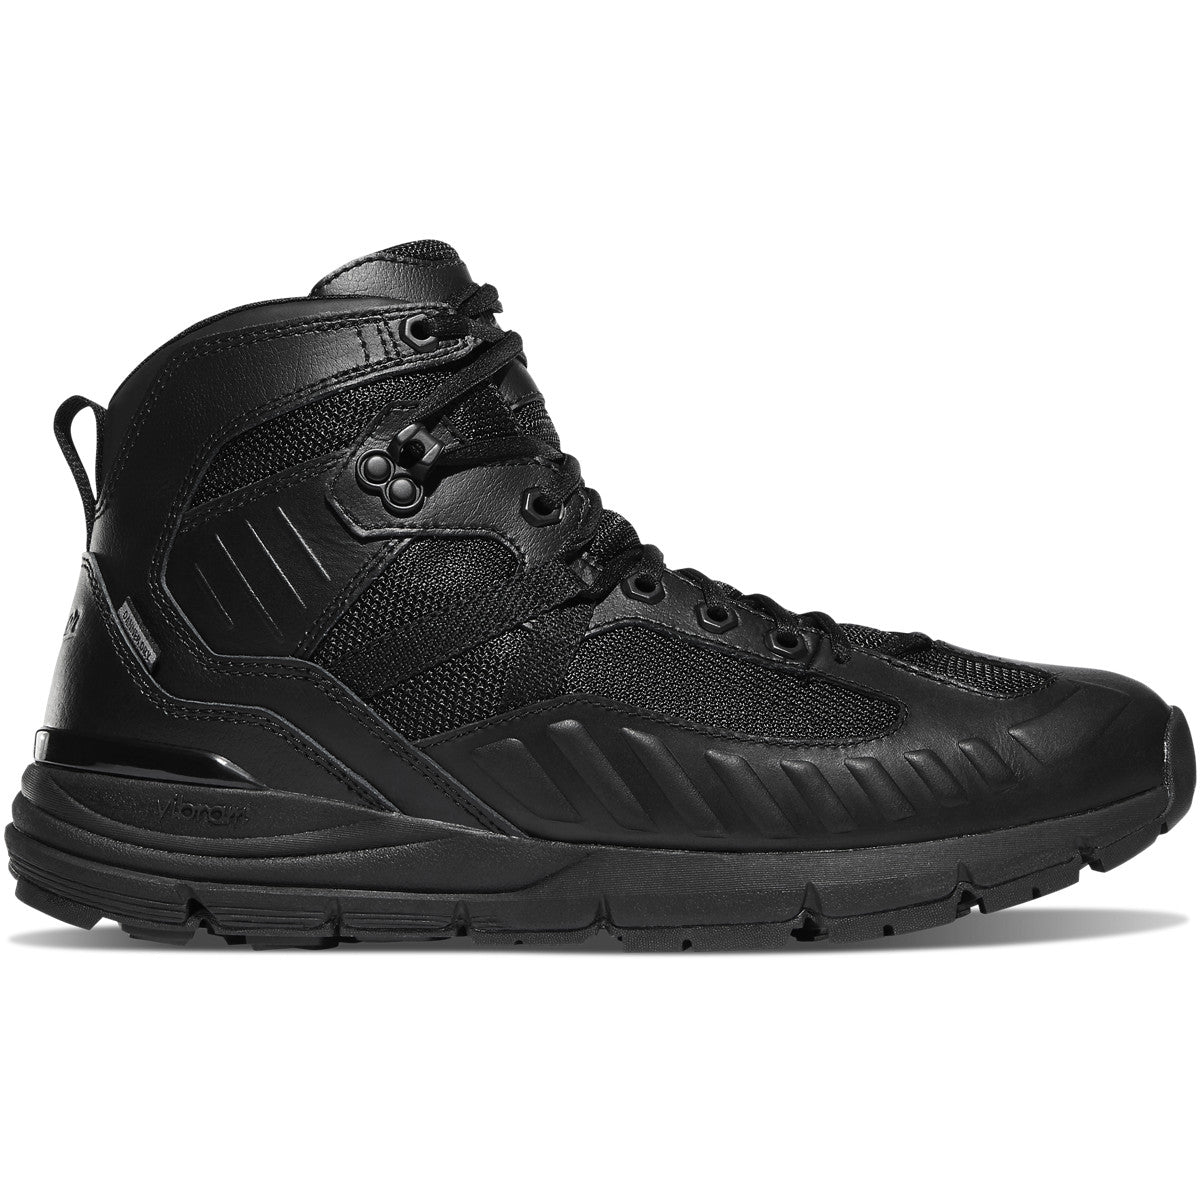 Danner Men's Fullbore 4.5" Waterproof Duty Boot - Black - 20511  - Overlook Boots